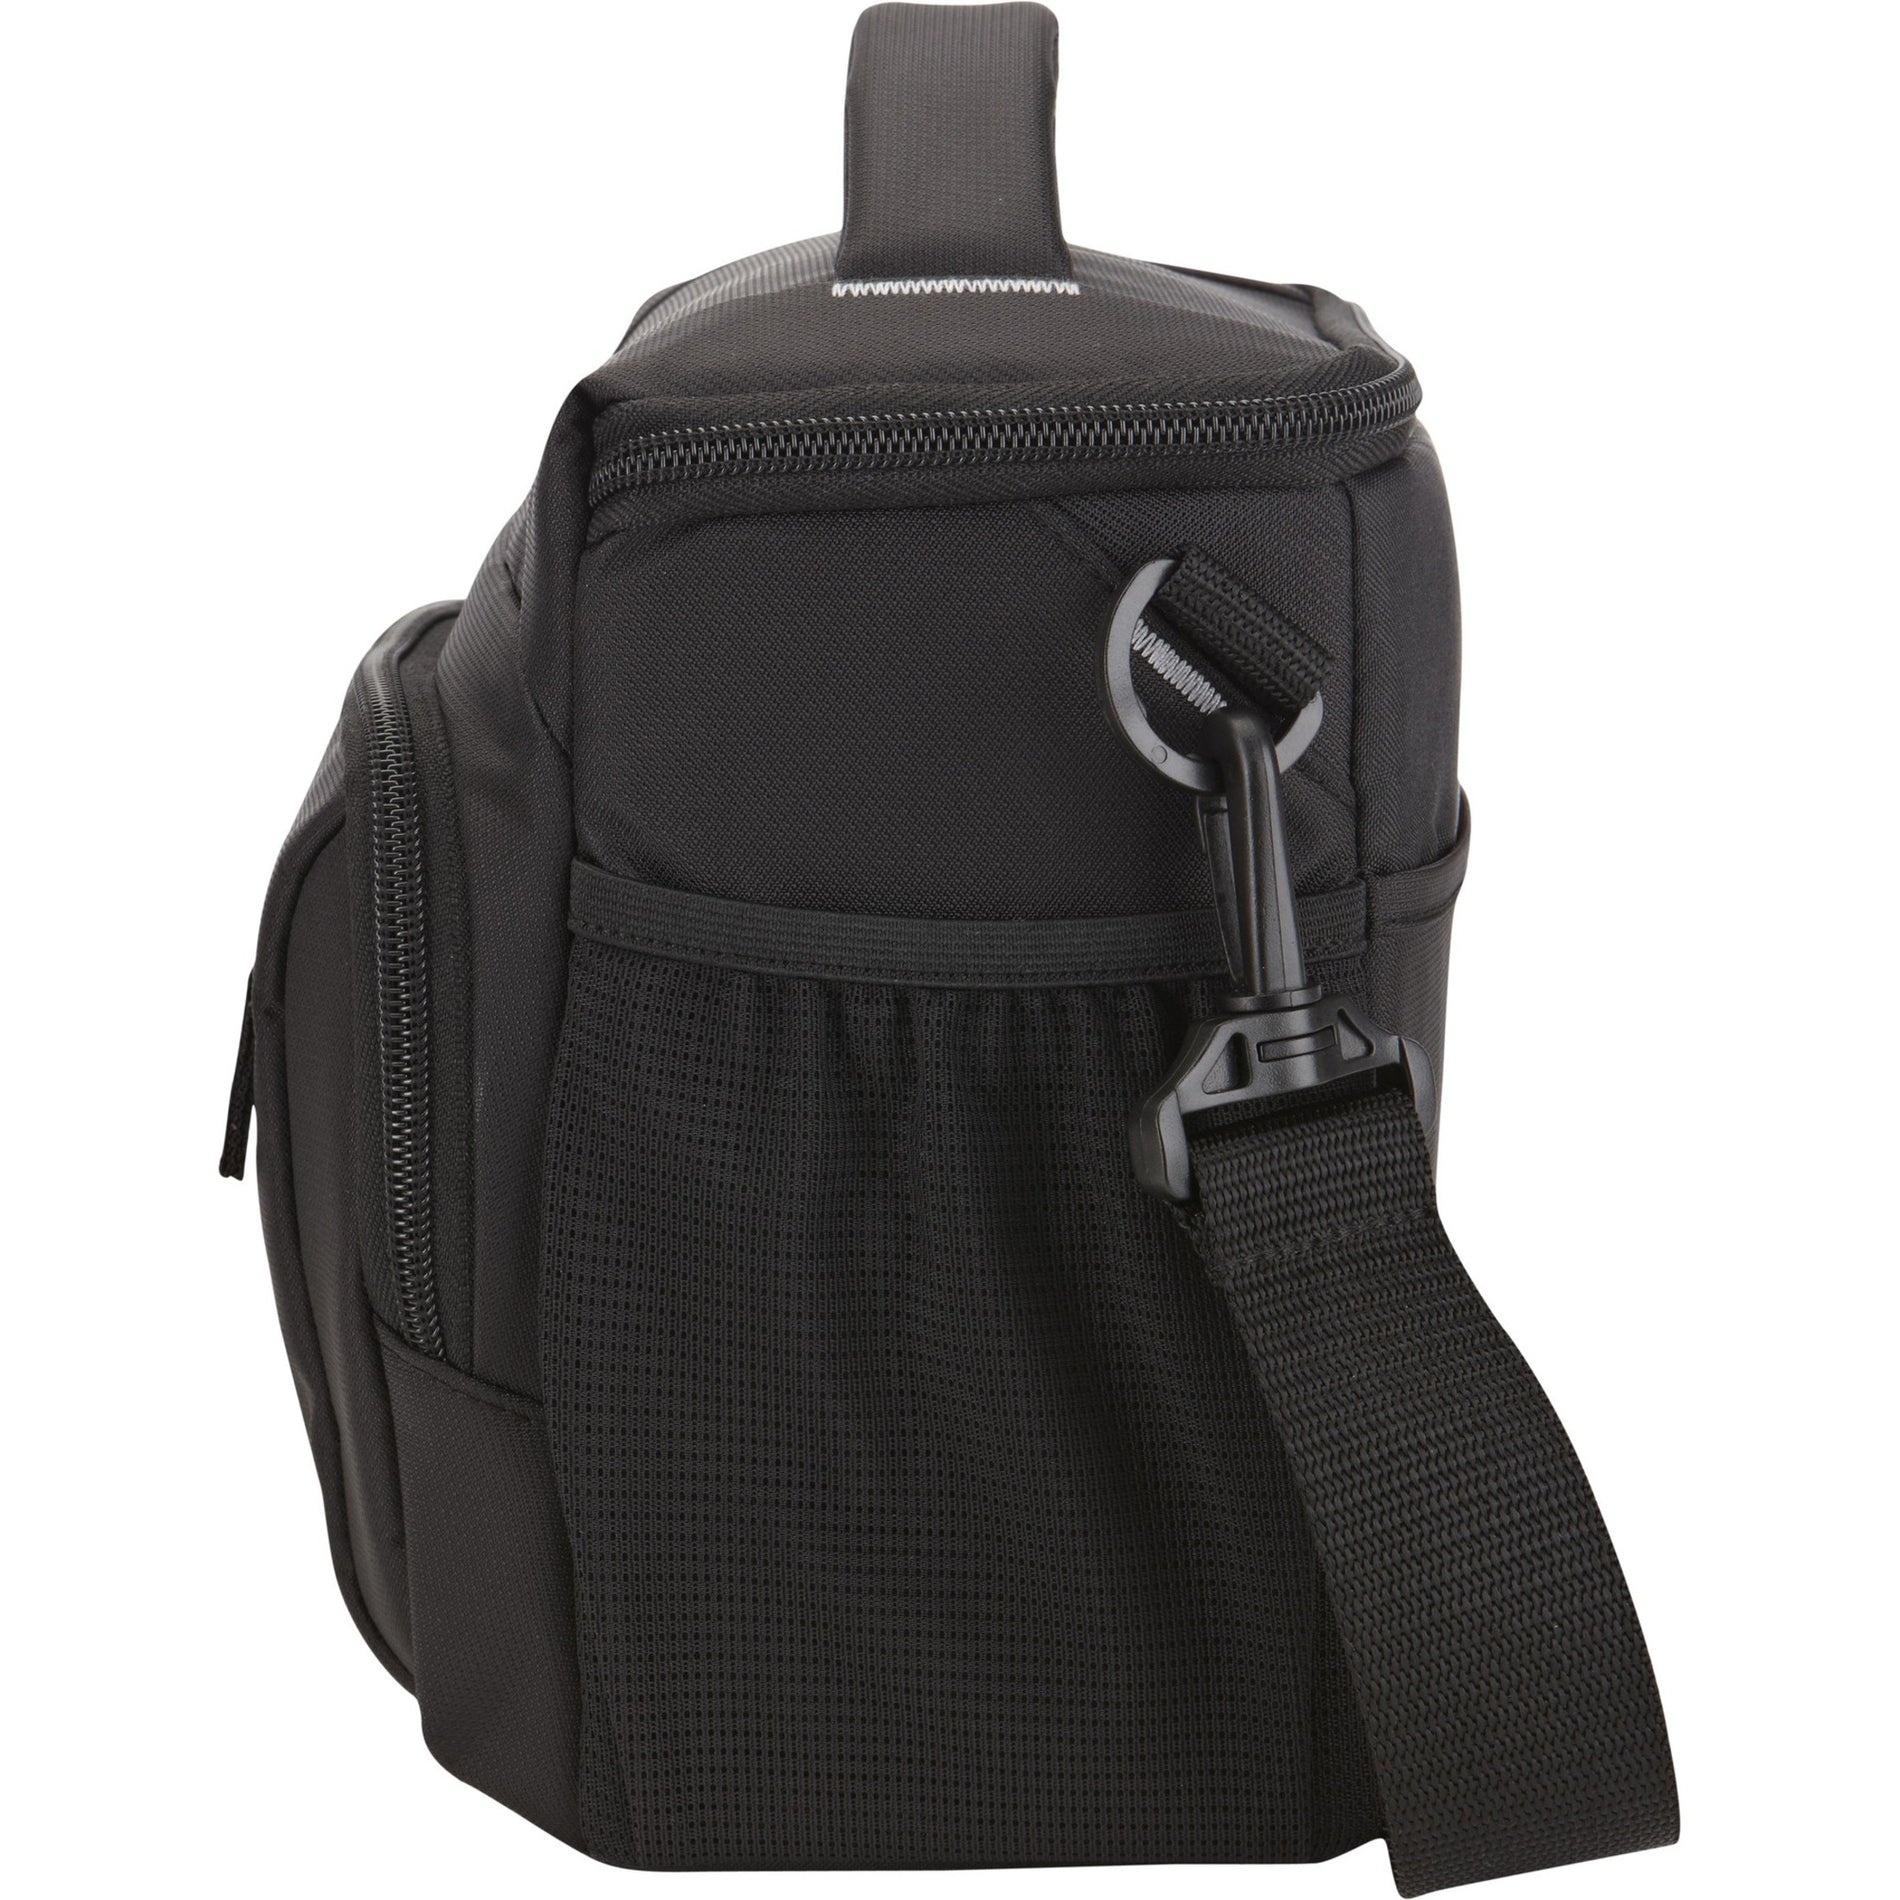 Case Logic 3201477 DSLR Shoulder Bag, Carrying Case for Accessories and Digital Camera